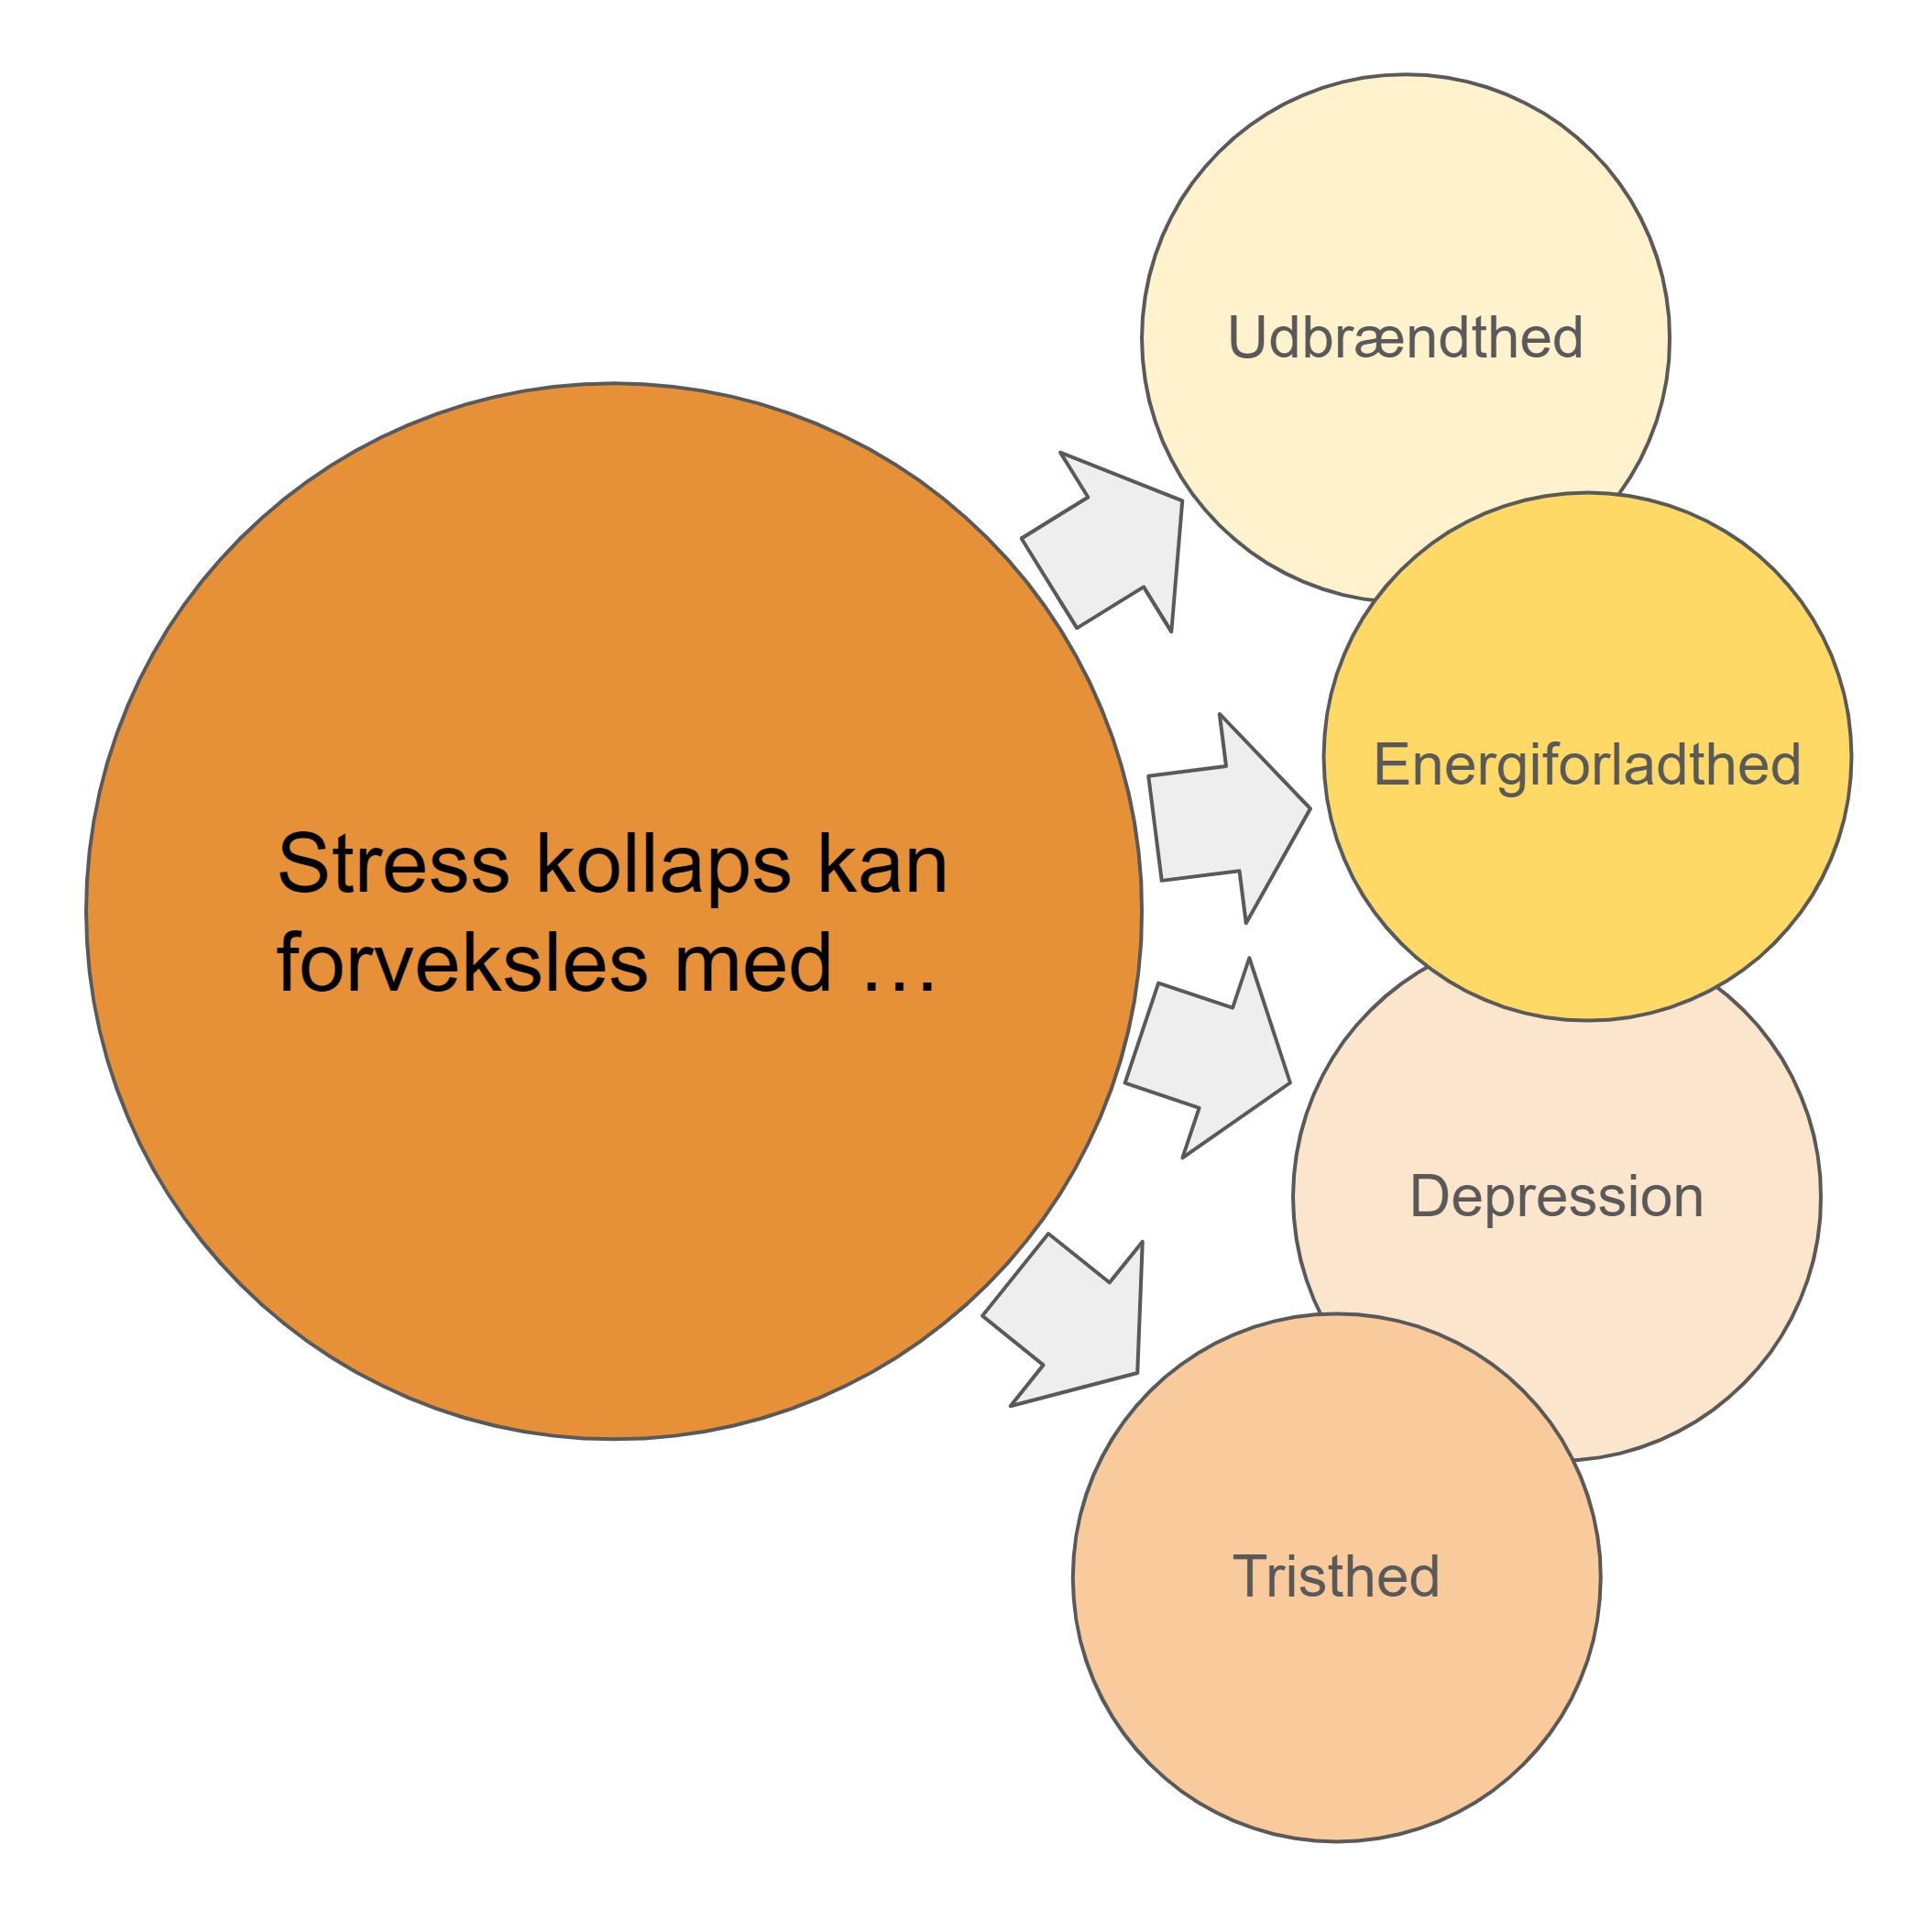 stress kollaps et stress kollaps kan opleves som tristhed depression energiforladthed og udbrændthed